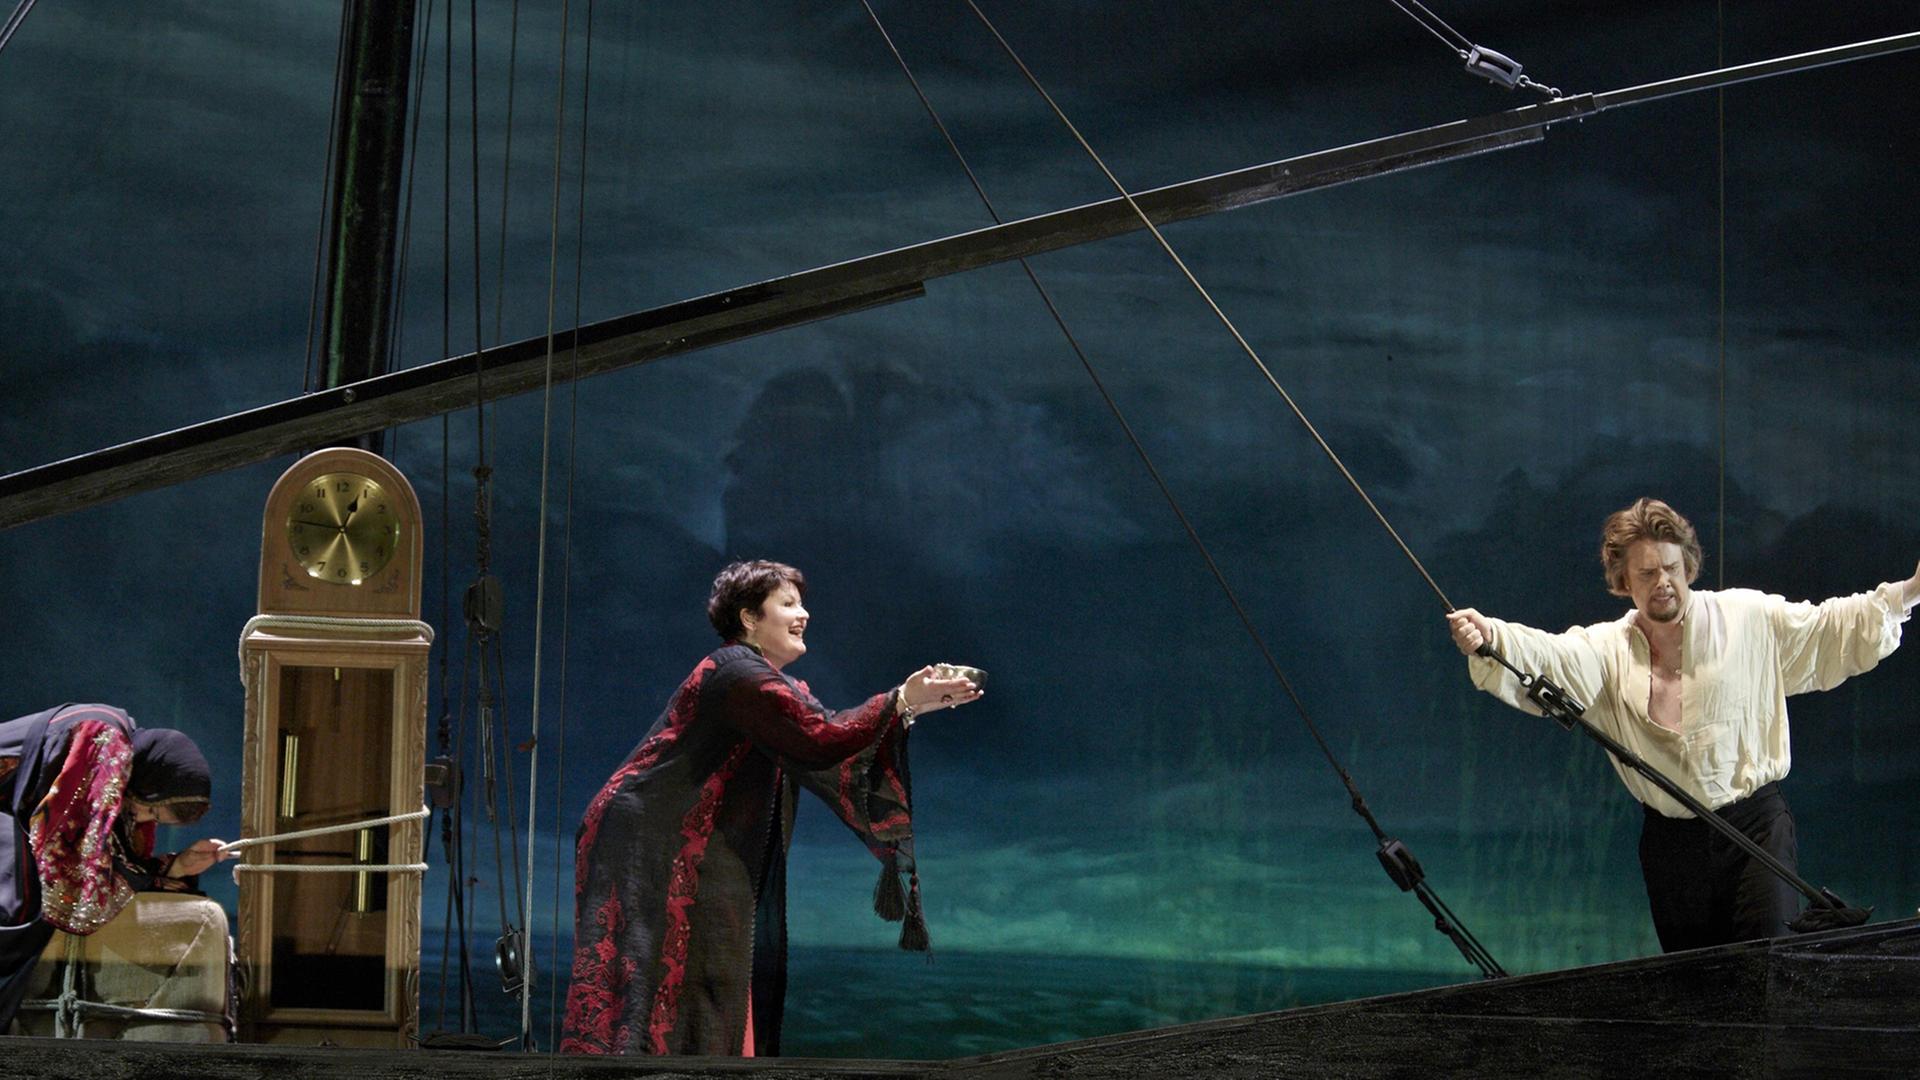 Bühnenszene aus der Oper "Tristan und Isolde"